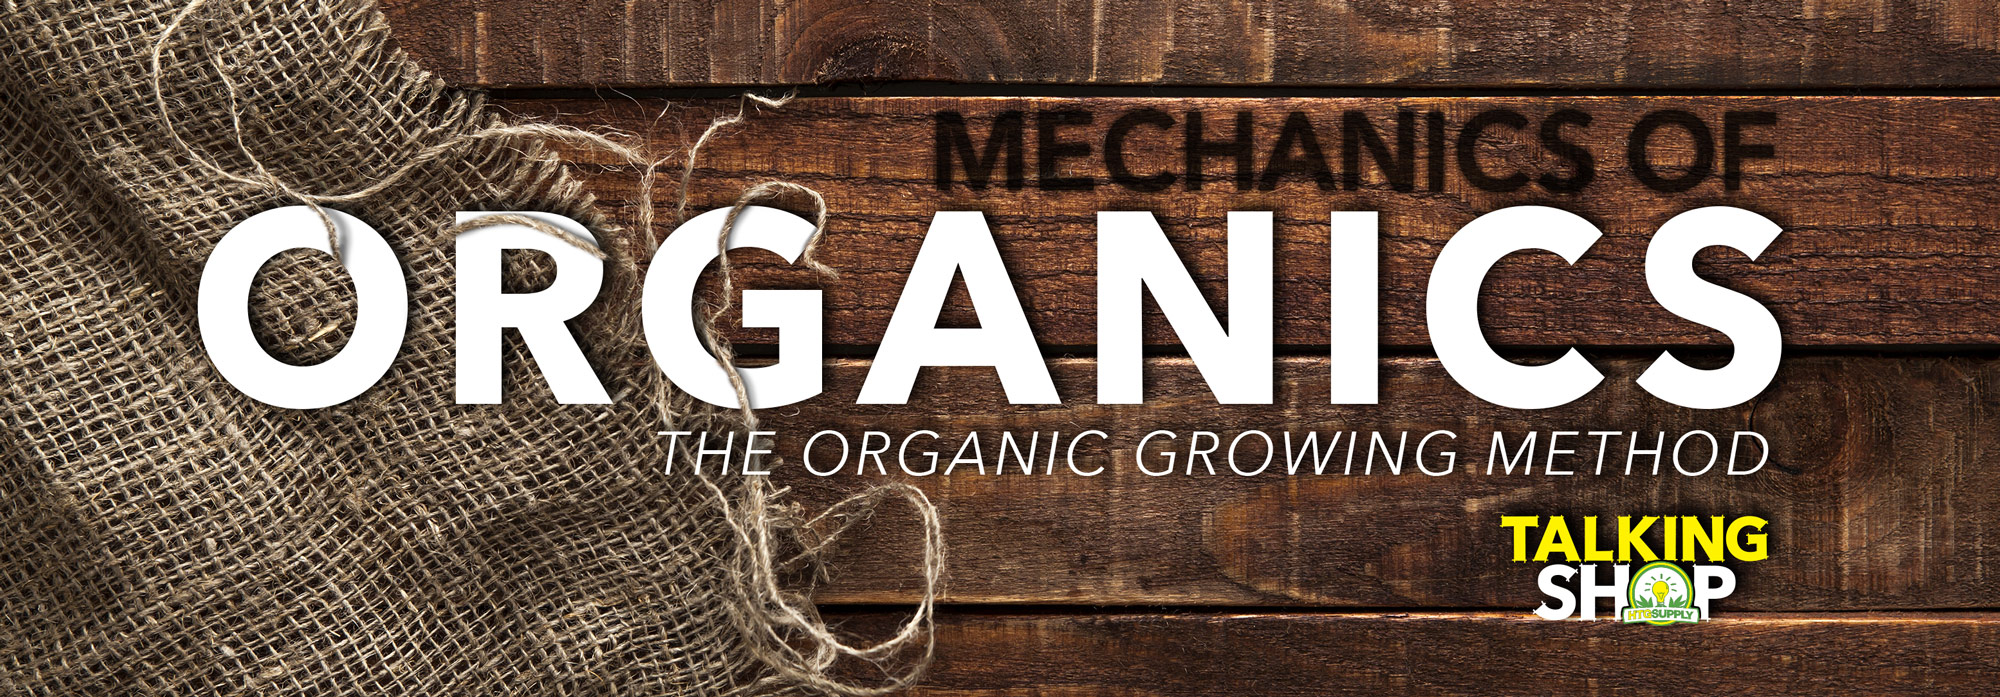 The Organic Growing Method